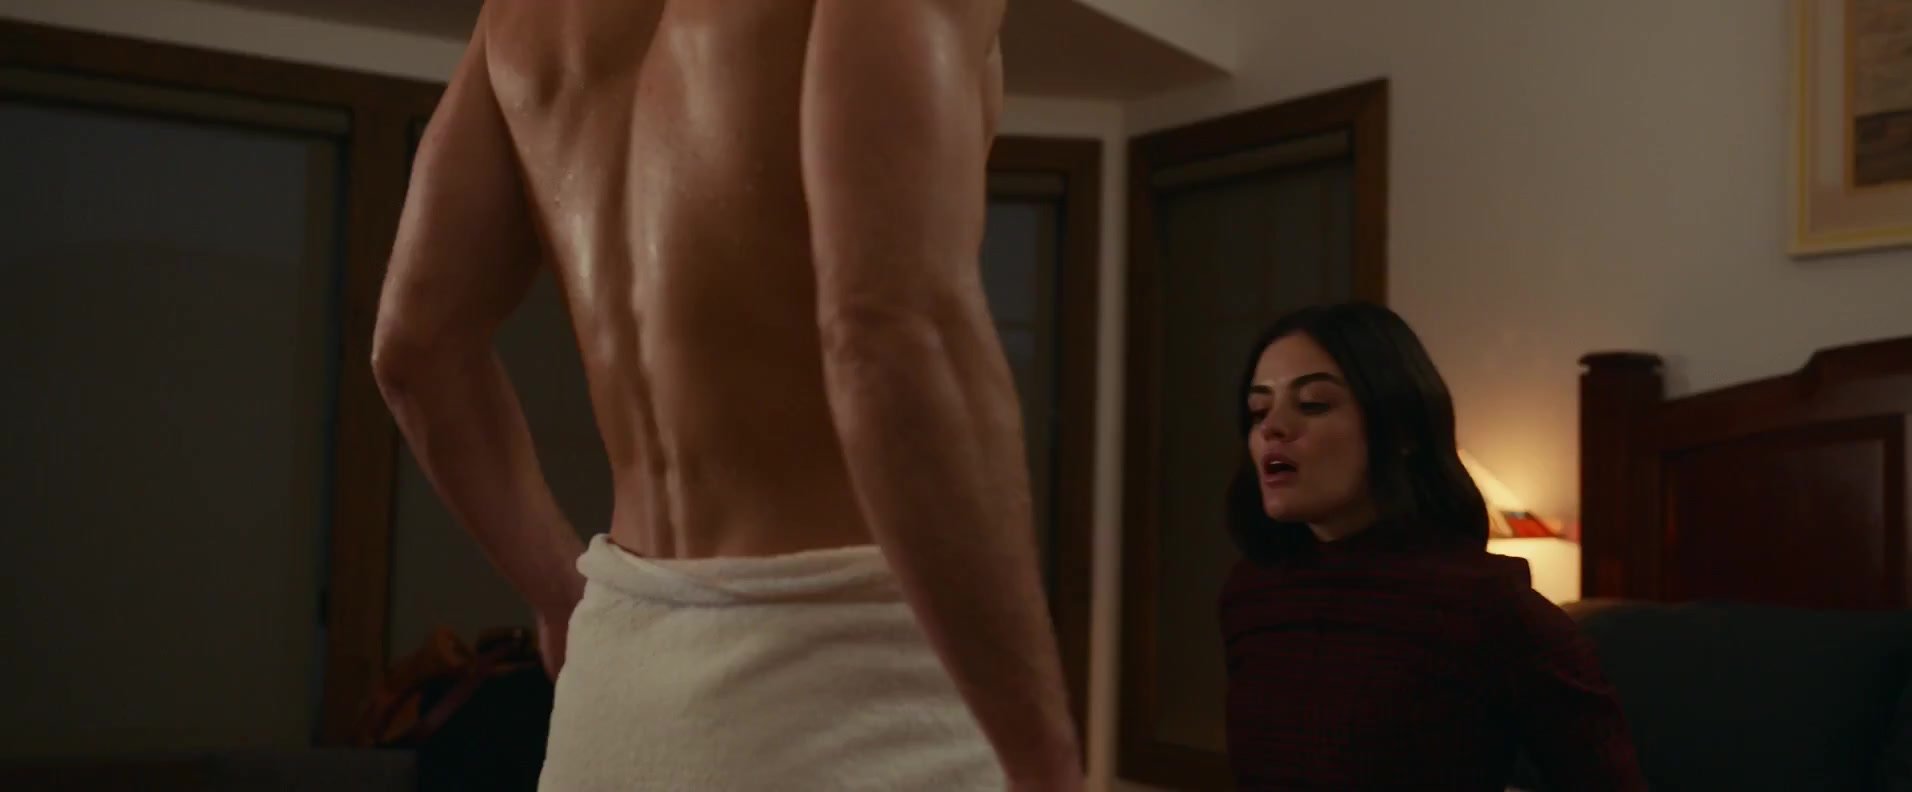 CFNM sex scene in a movie picture image